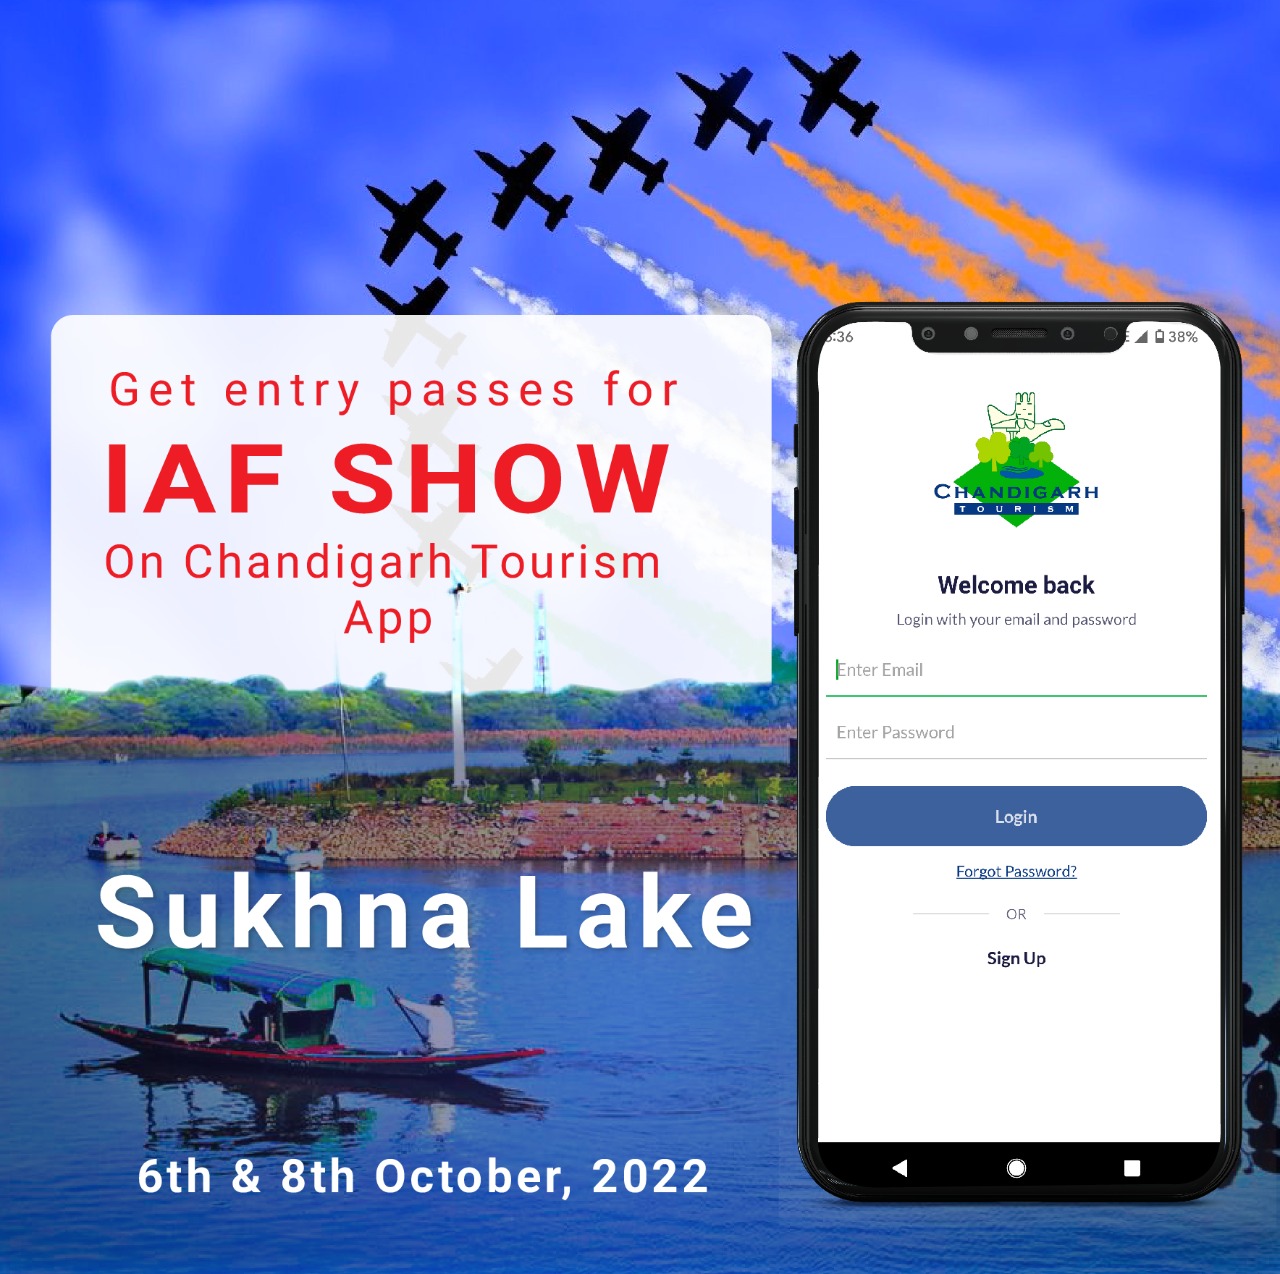 Image of भारतीय वायु सेना द्वारा एयर शो! सुखना लेक, चंडीगढ़ में 6 और 8 अक्टूबर, 2022